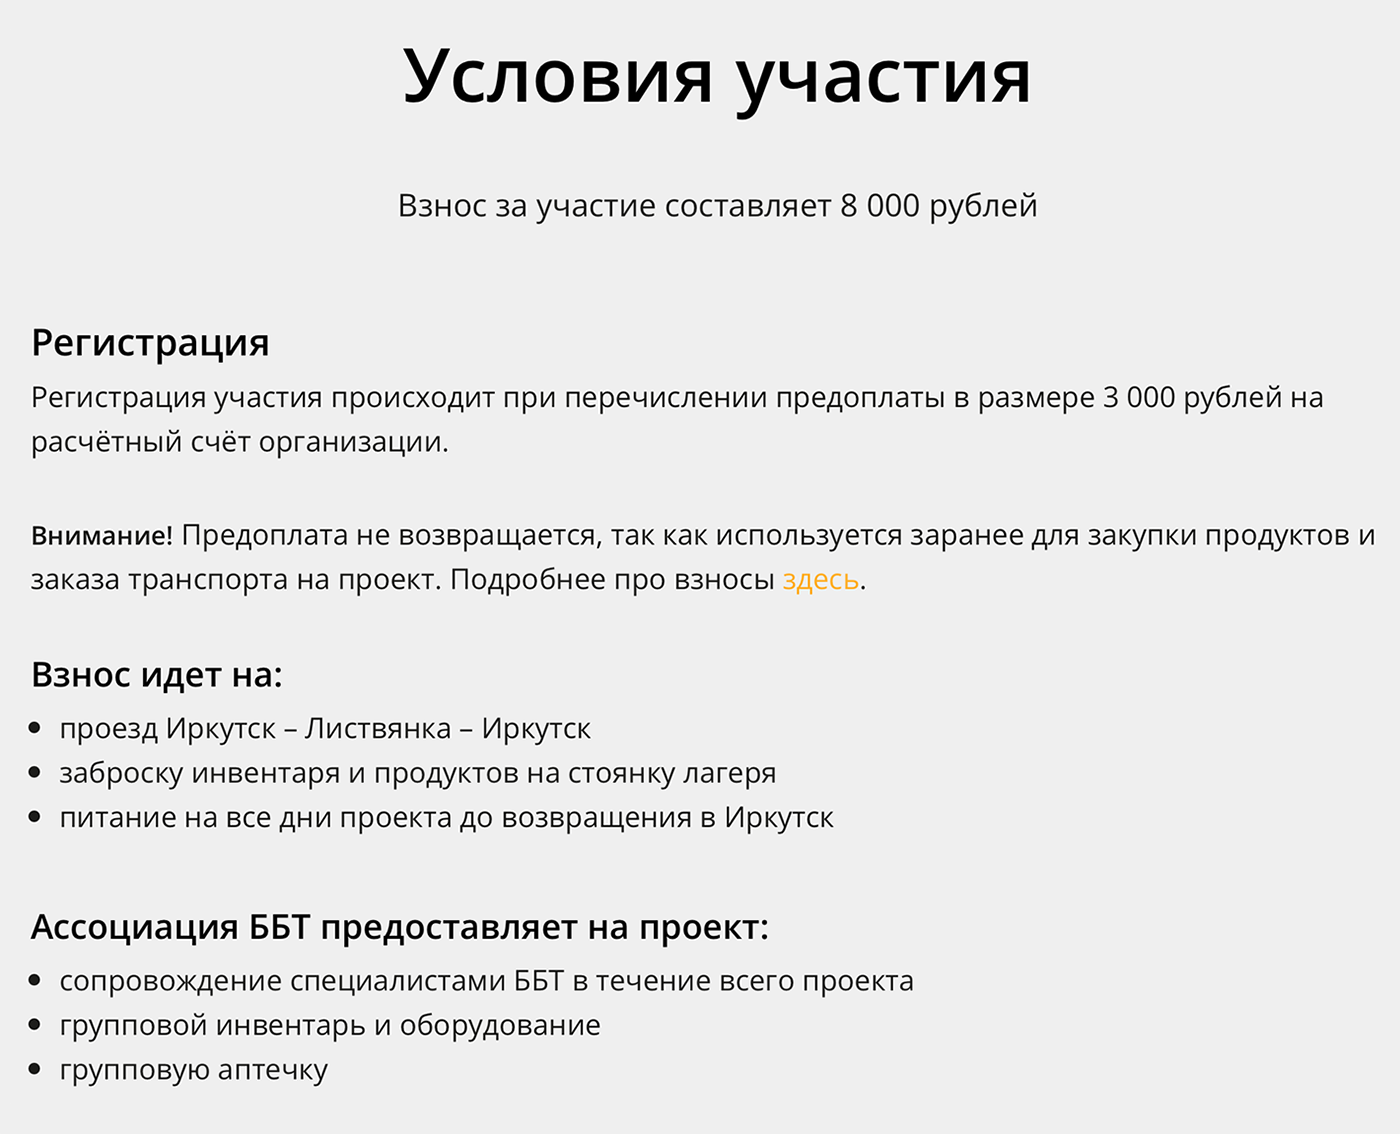 Часть волонтерского взноса нужно будет оплатить заранее, остальную сумму — по приезде в Иркутск. Это условия участия в строительстве экотропы в Прибалтийском национальном парке с 11 по 18 июля 2022 года